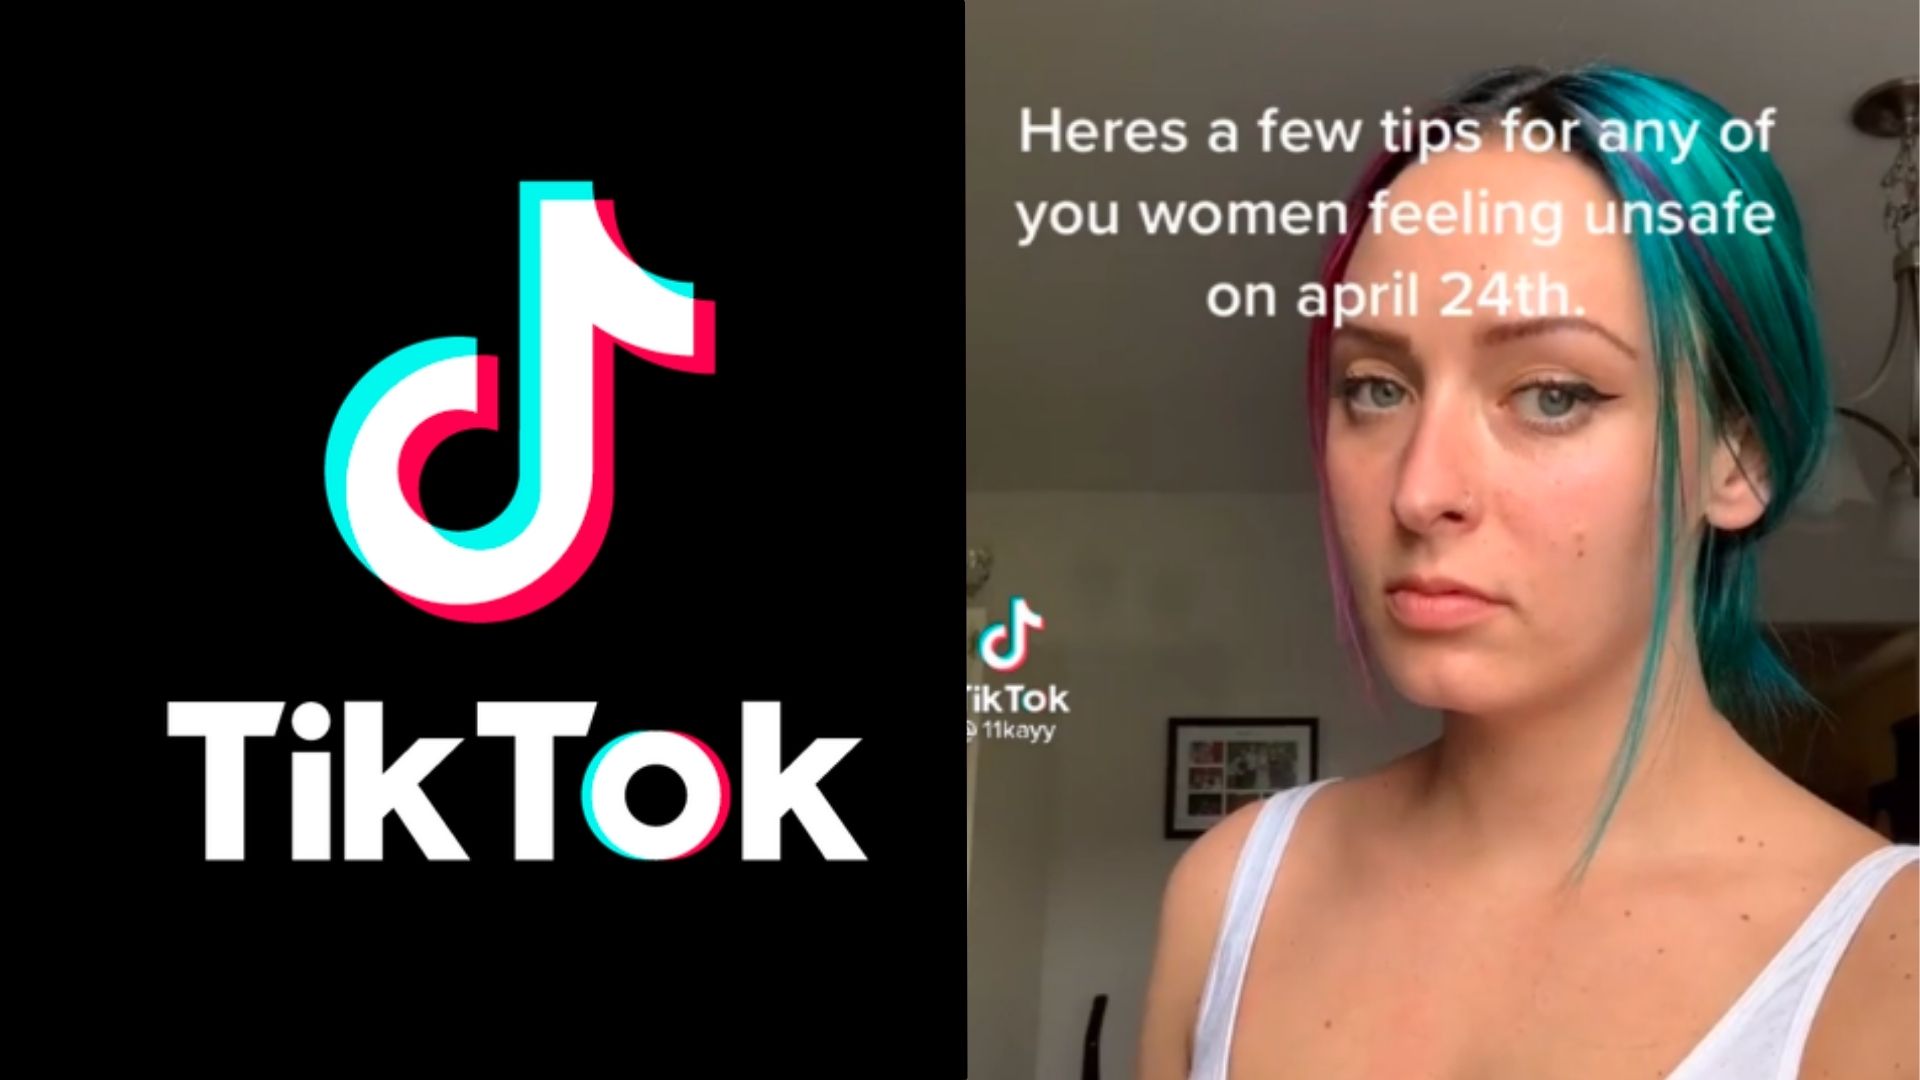 Logo tiktok aux côtés de la femme qui regarde l'écran avec légende pour des conseils